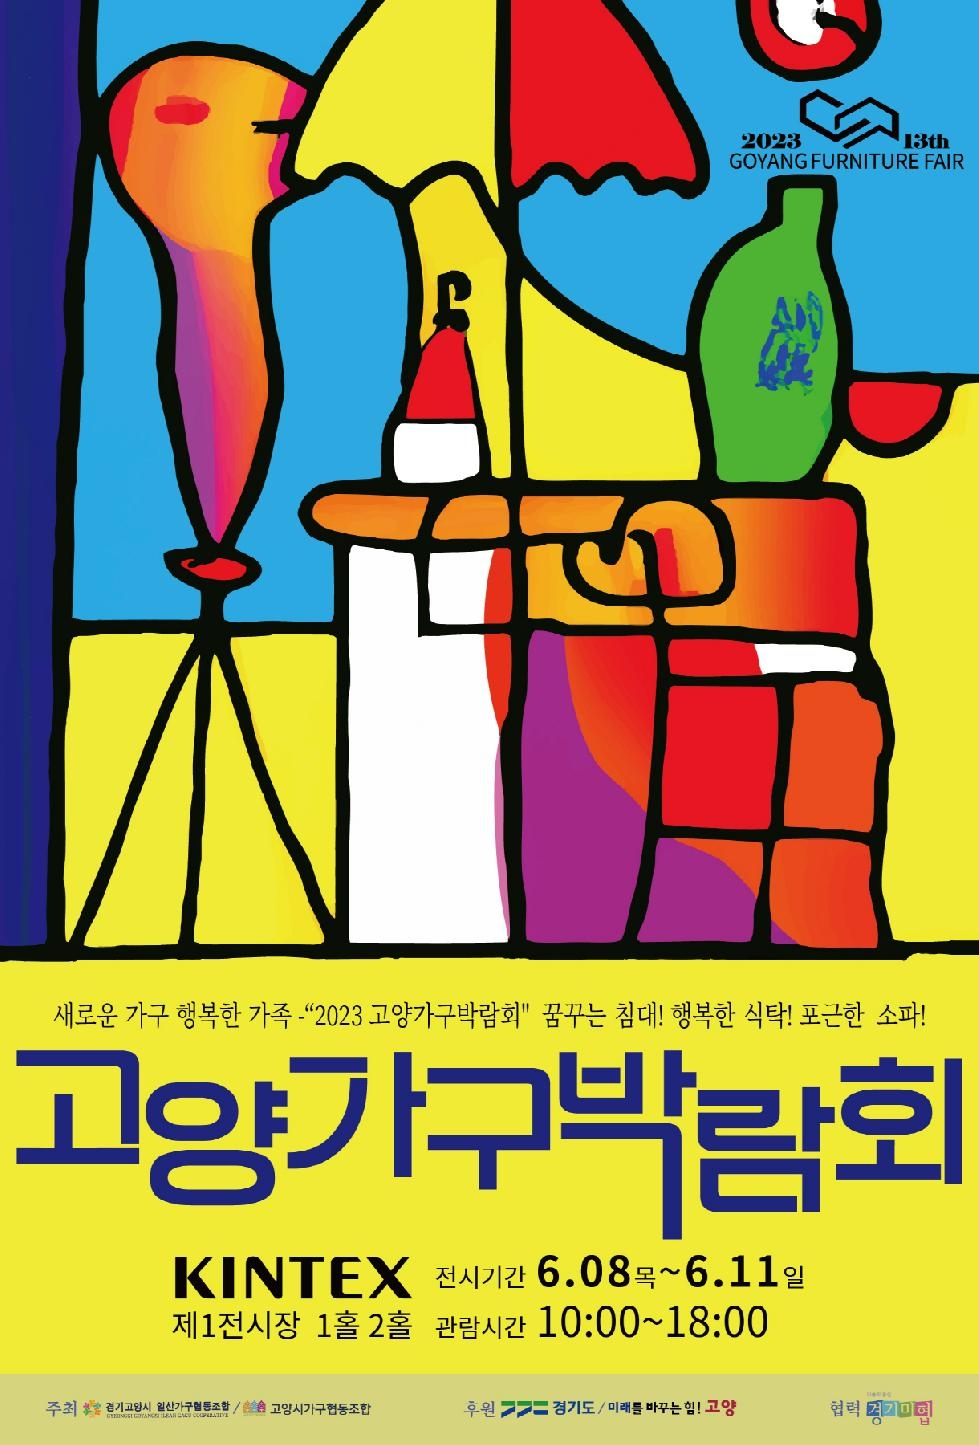 가구 박람회와 미술전의 결합…‘2023 고양가구박람회’ 개최